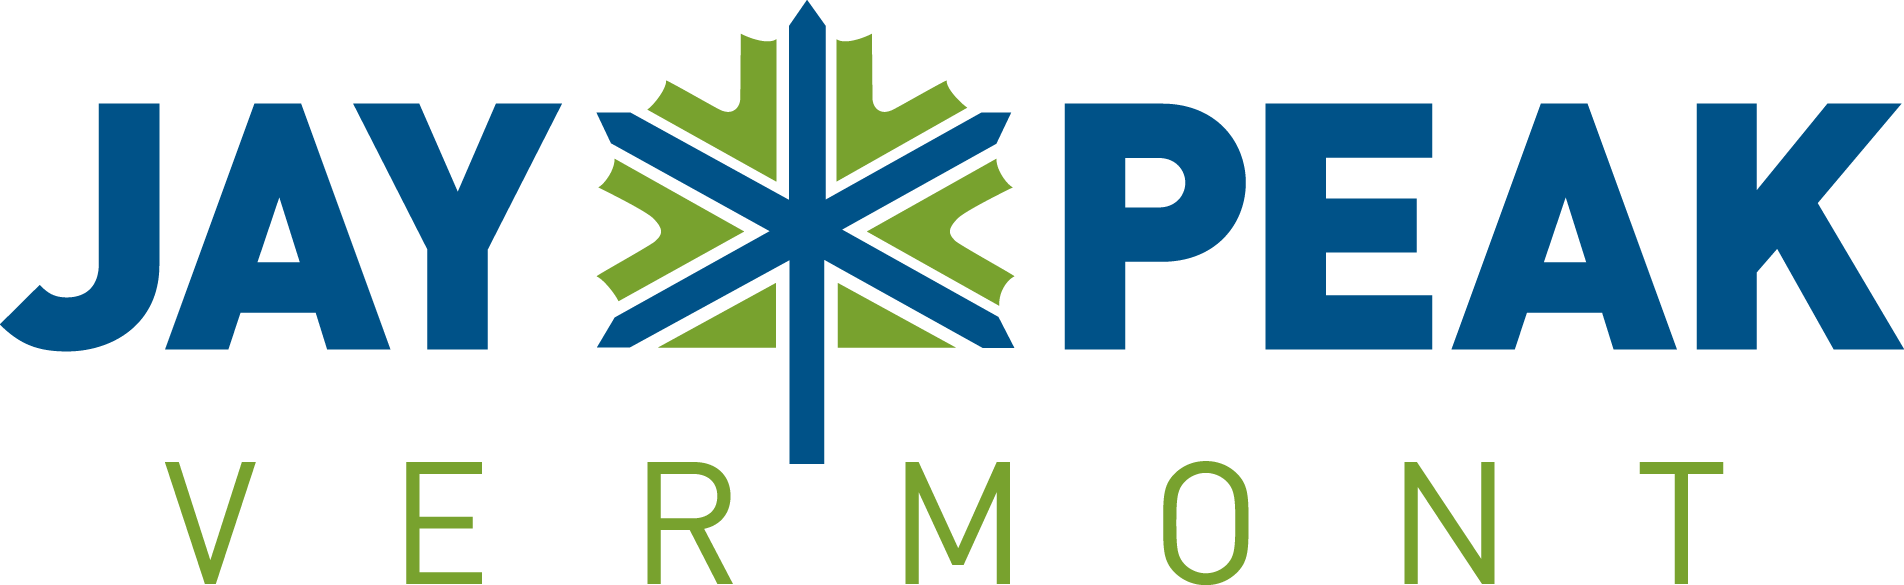 Jay_Peak_Logo.png